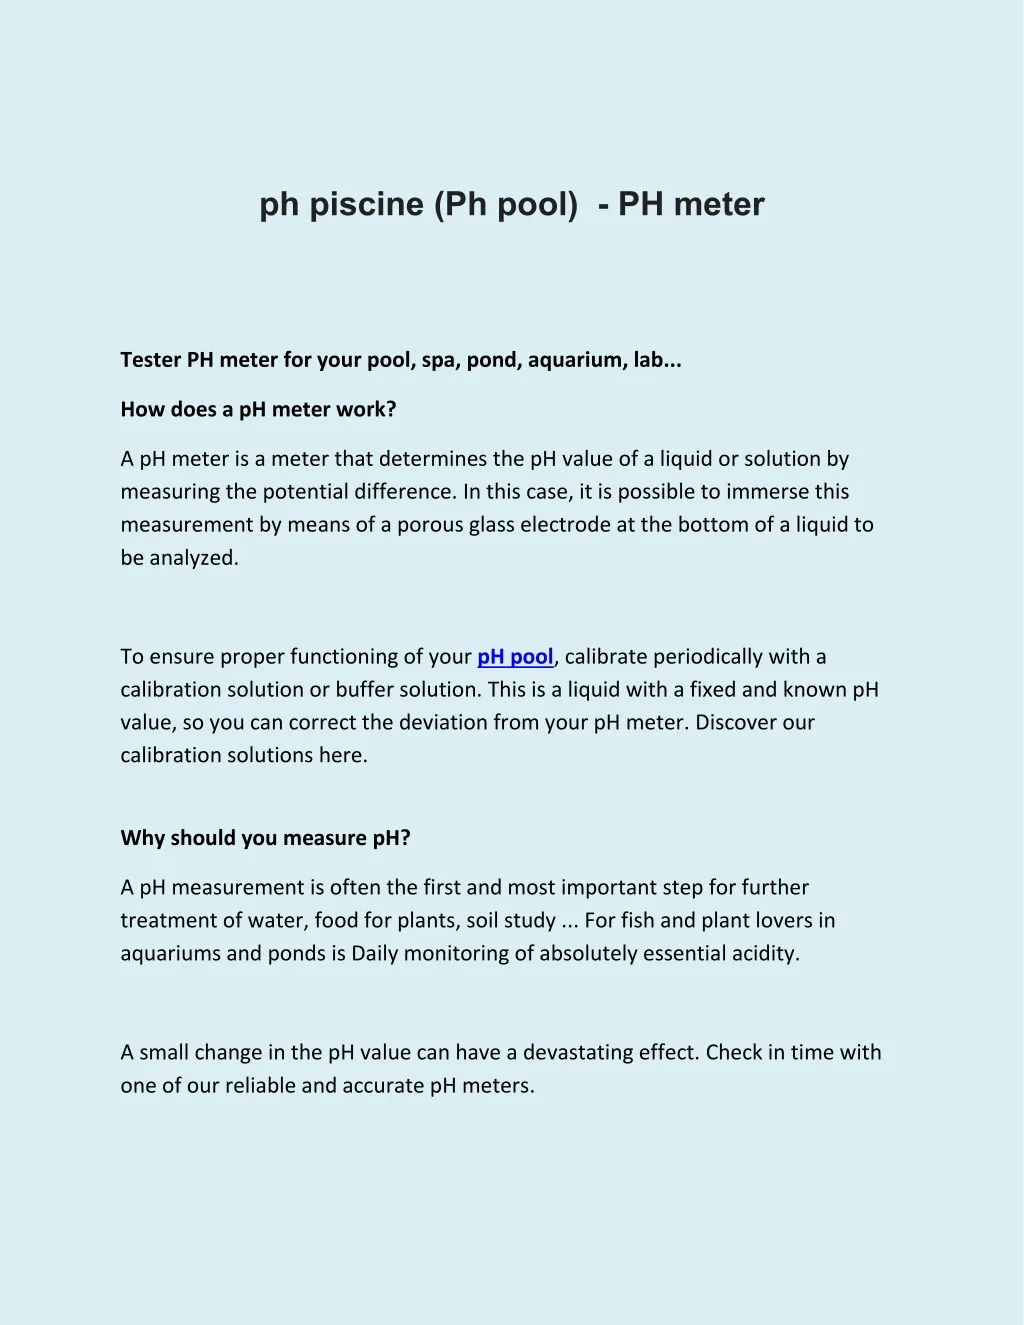 ph piscine ph pool ph meter